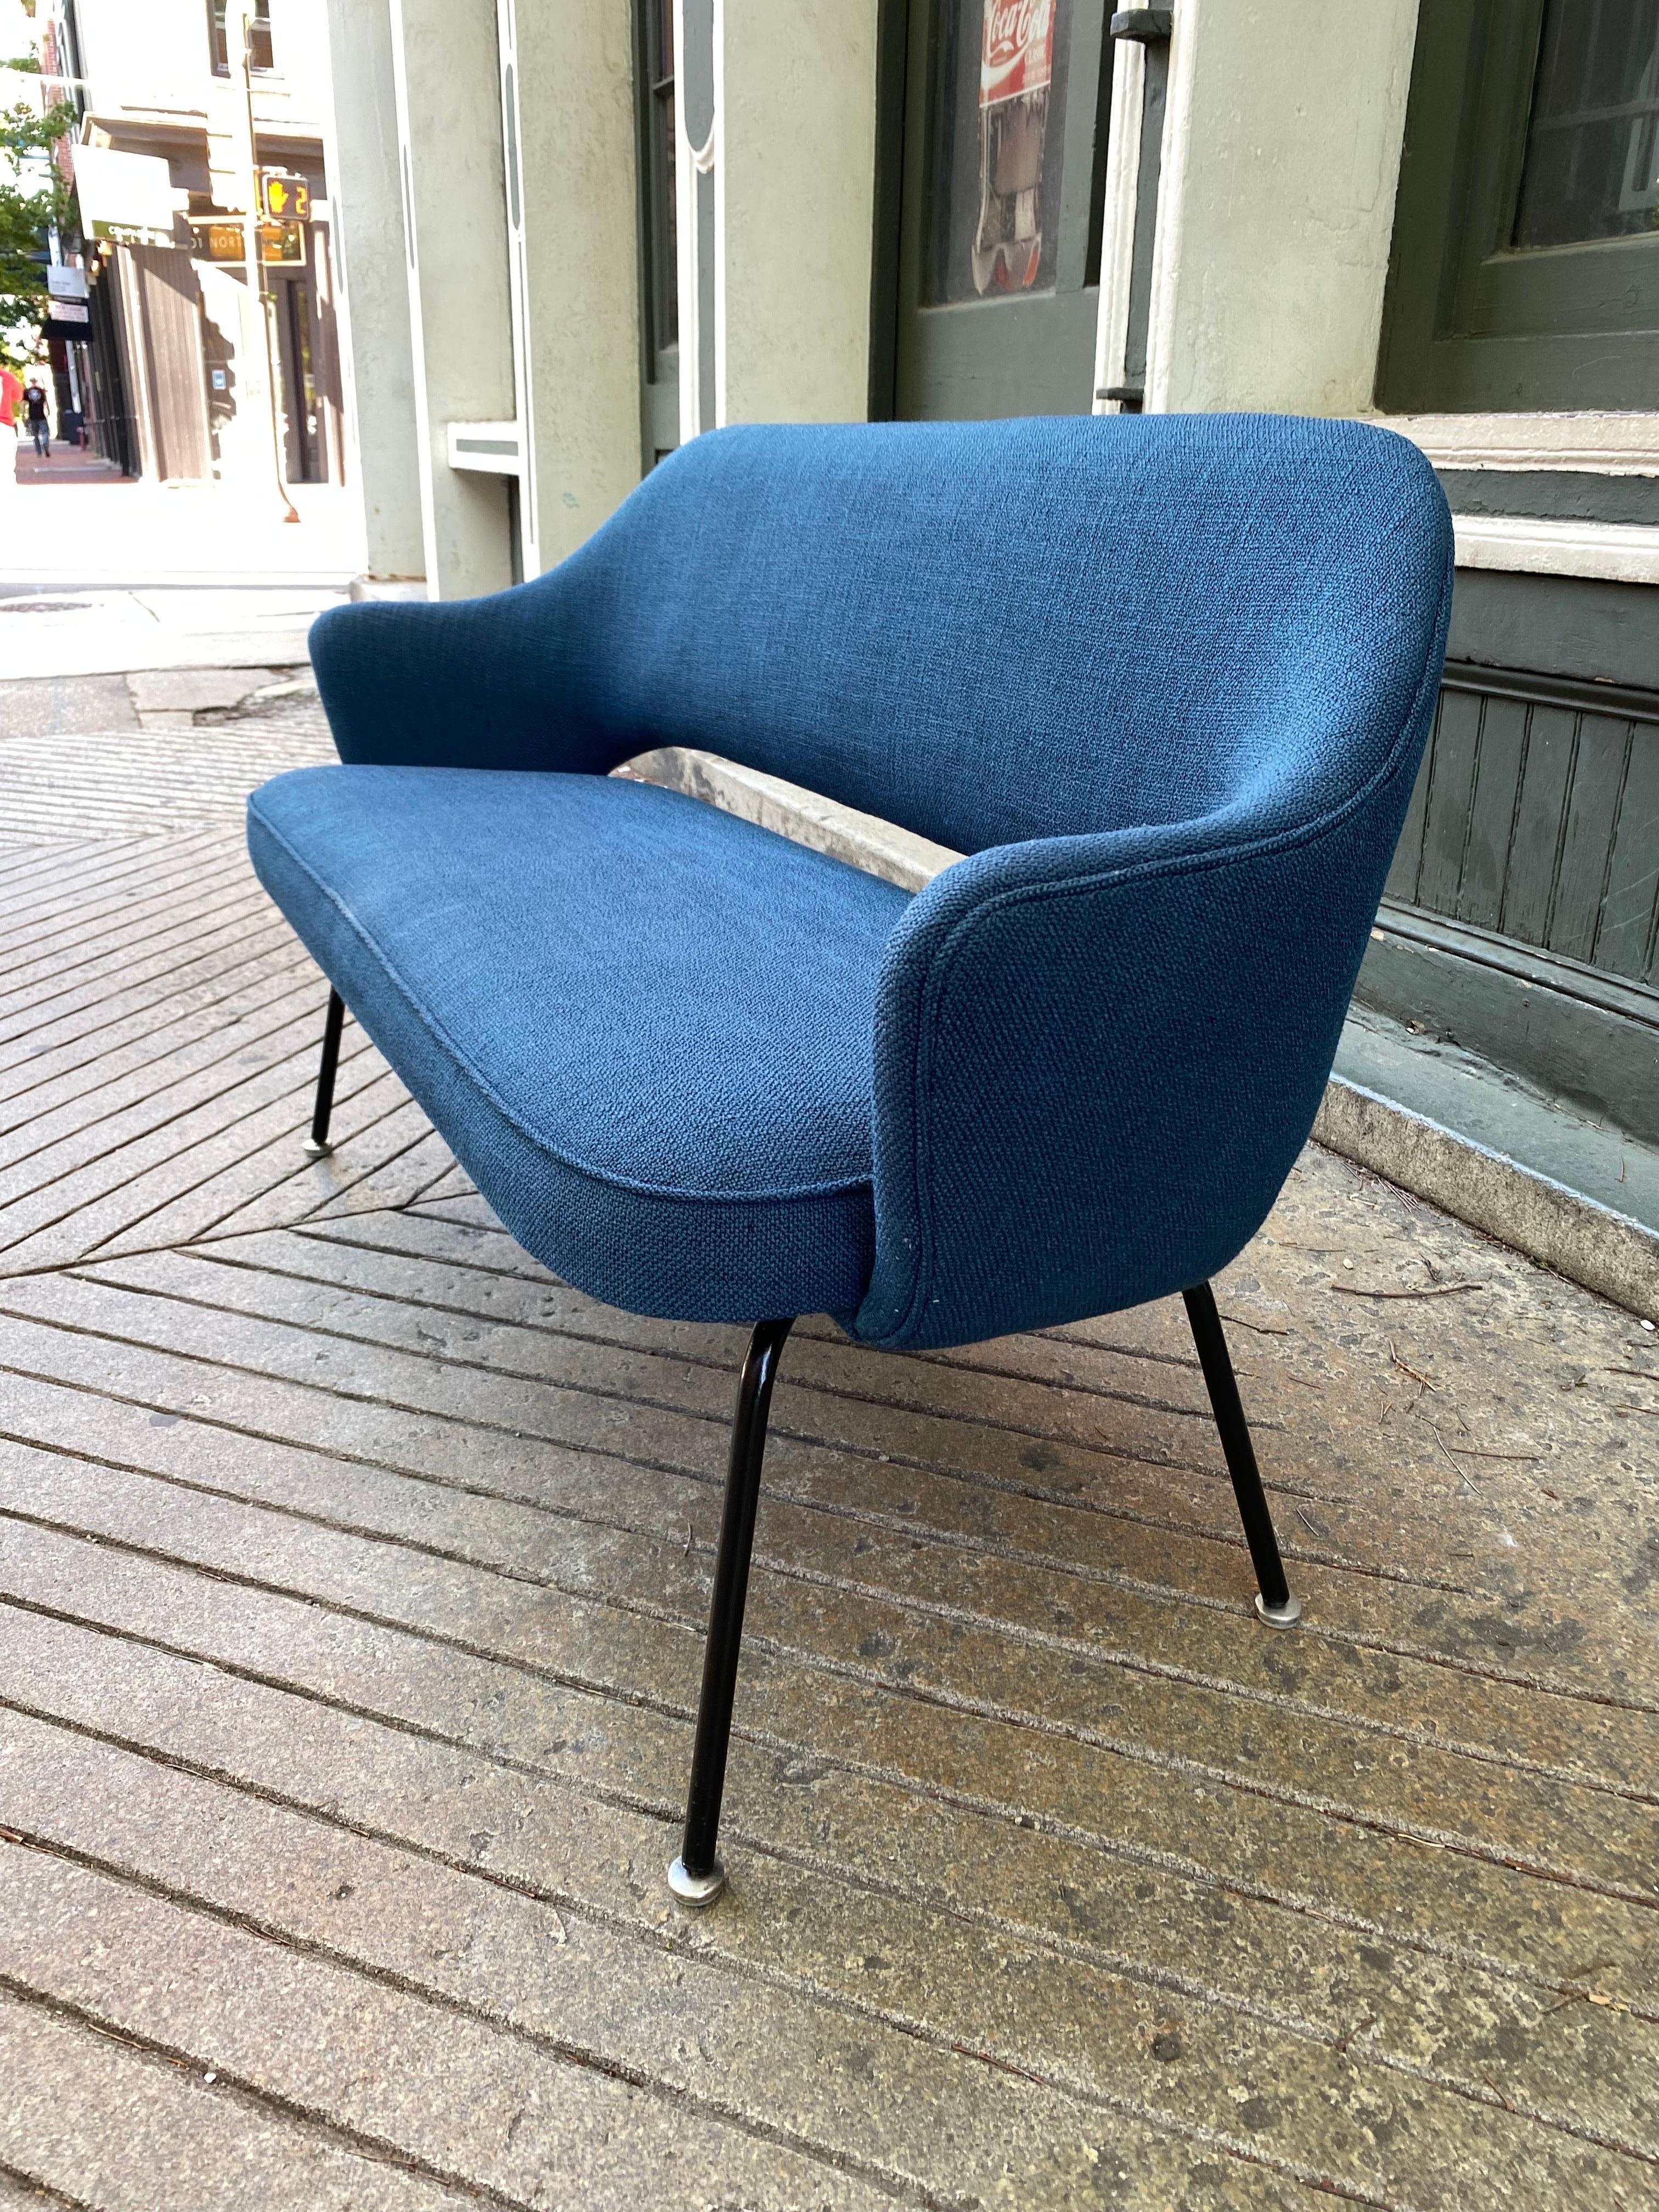 Wir freuen uns sehr, Saarinen inspirierte Loveseats anbieten zu können! Diese Sessel werden aus vorhandenen Sesseln gebaut und durch Aufschneiden und Hinzufügen von Holz auf die aktuelle Größe gebracht. Mein sehr kluger Polsterer hat jahrelang Knoll